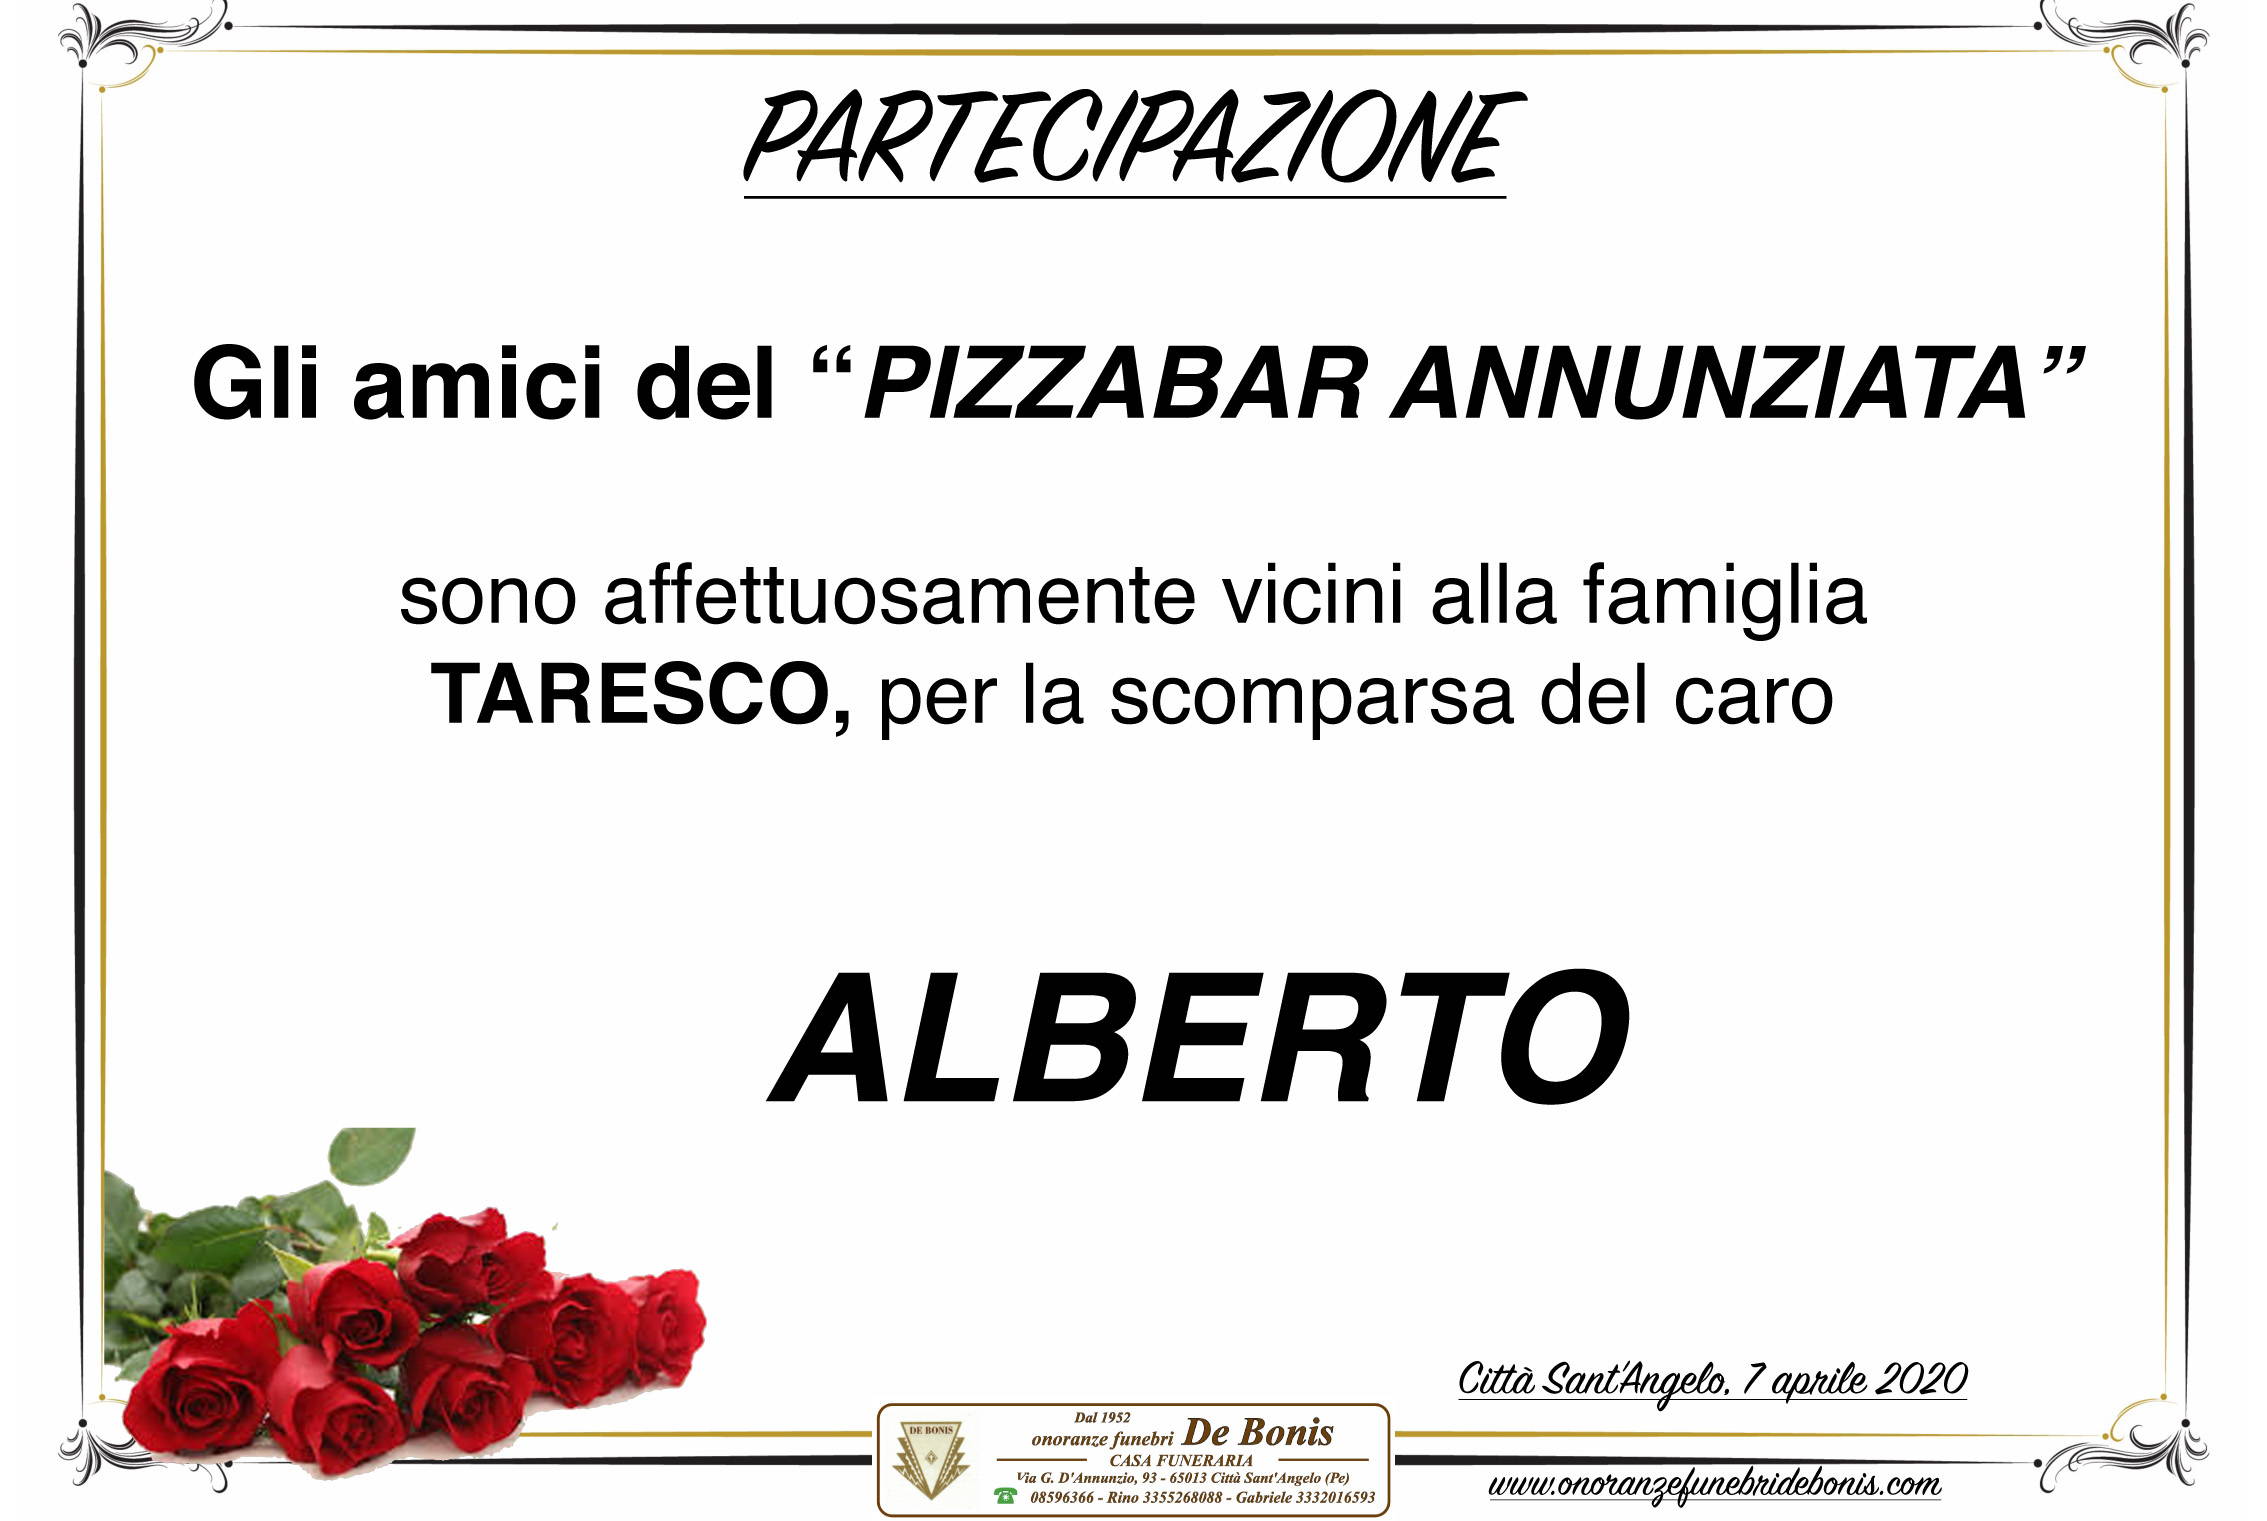 PizzaBar Annunziata